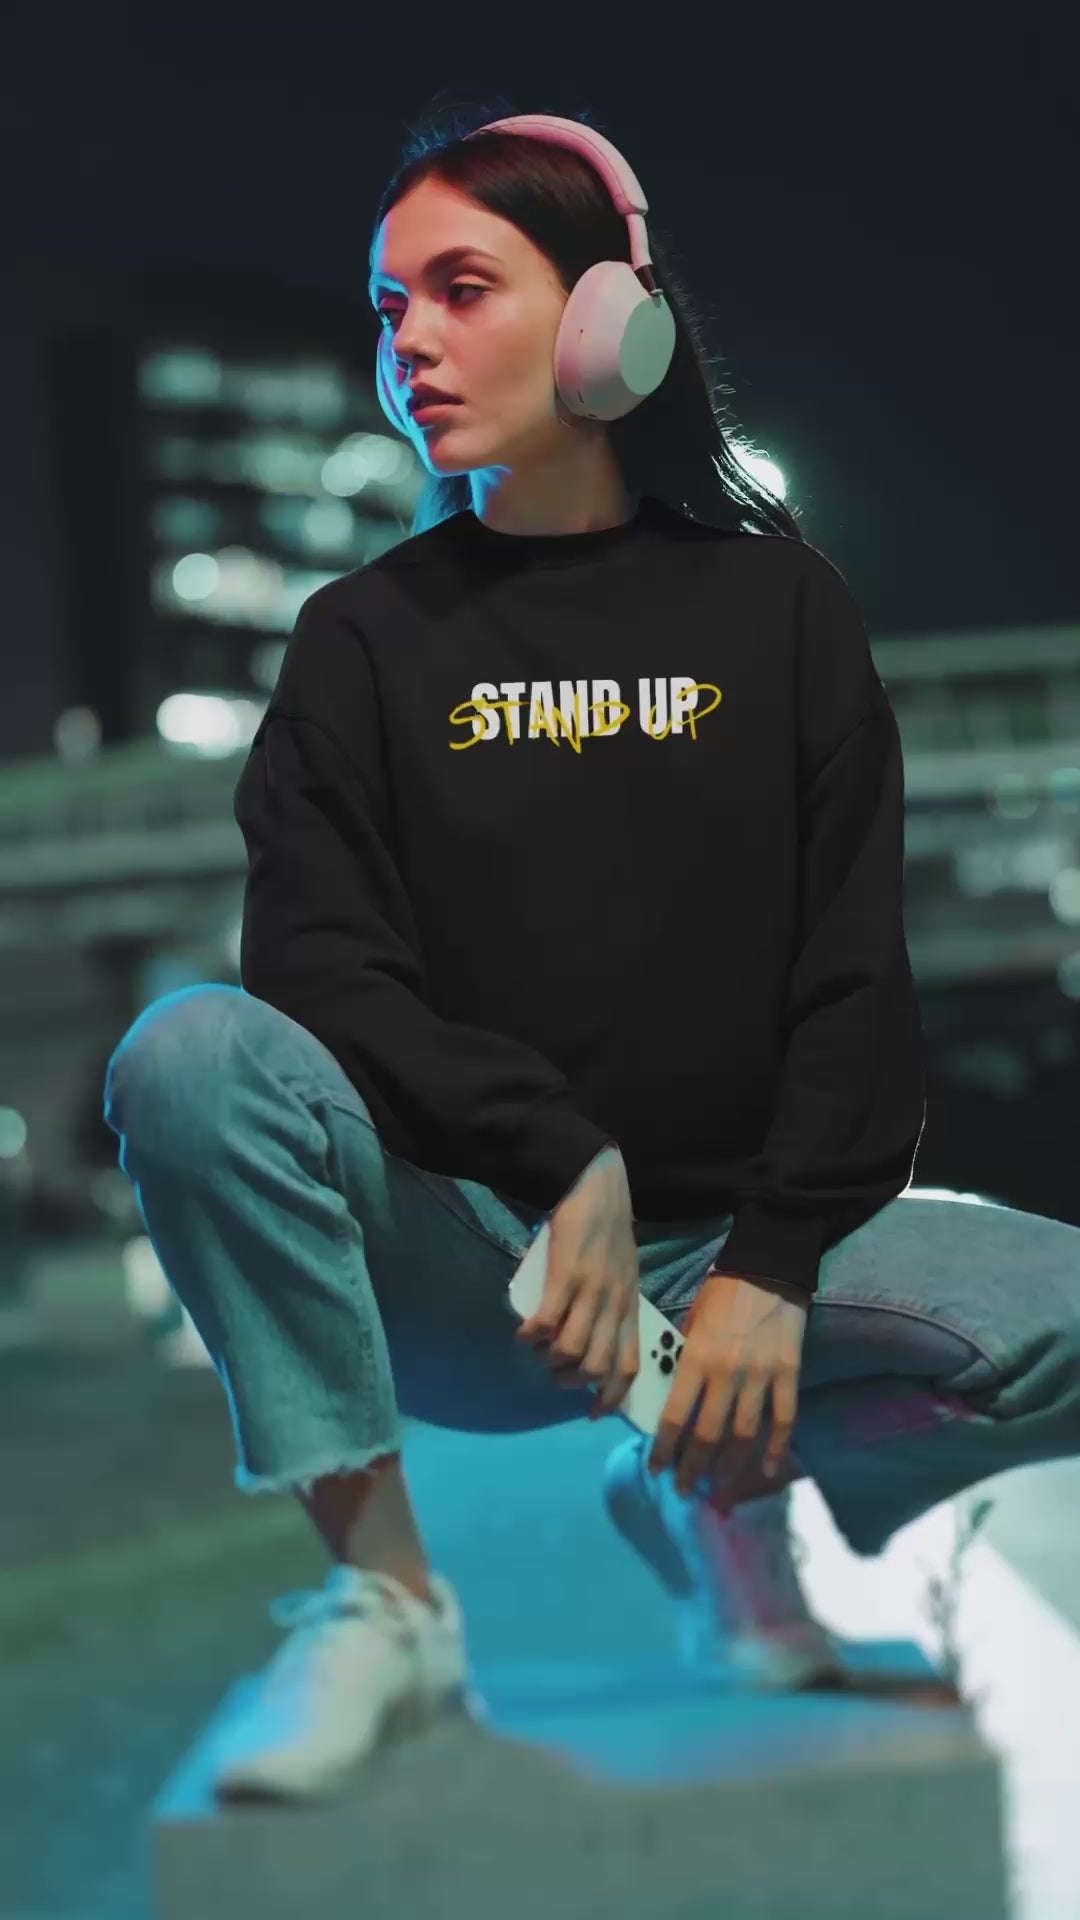 Neon - Sweatshirt Video Ad